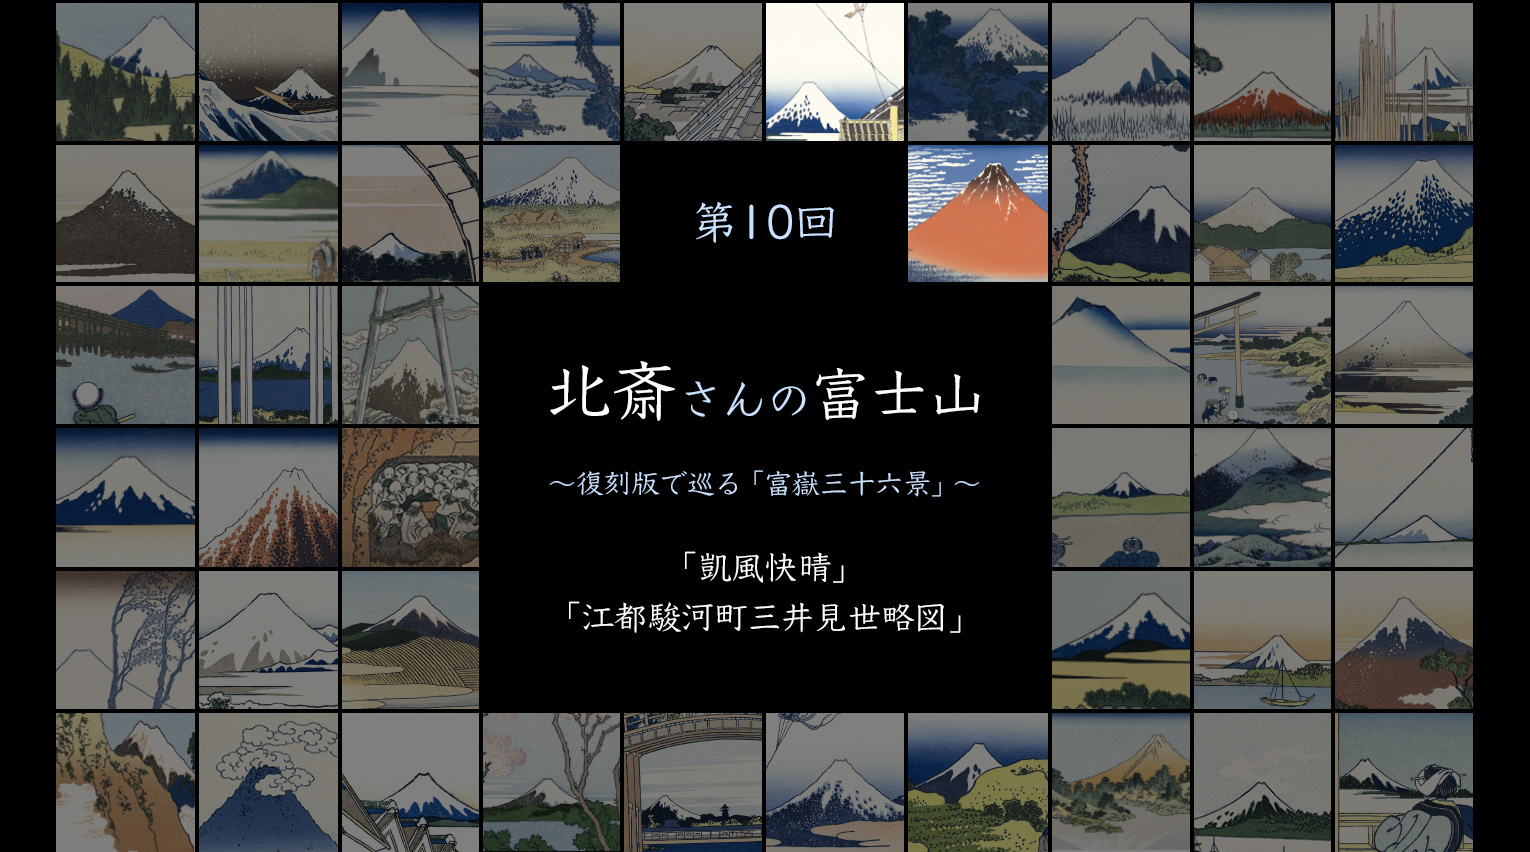 北斎さんの富士山 〜復刻版で見る「富嶽三十六景」〜 (10)【PR】